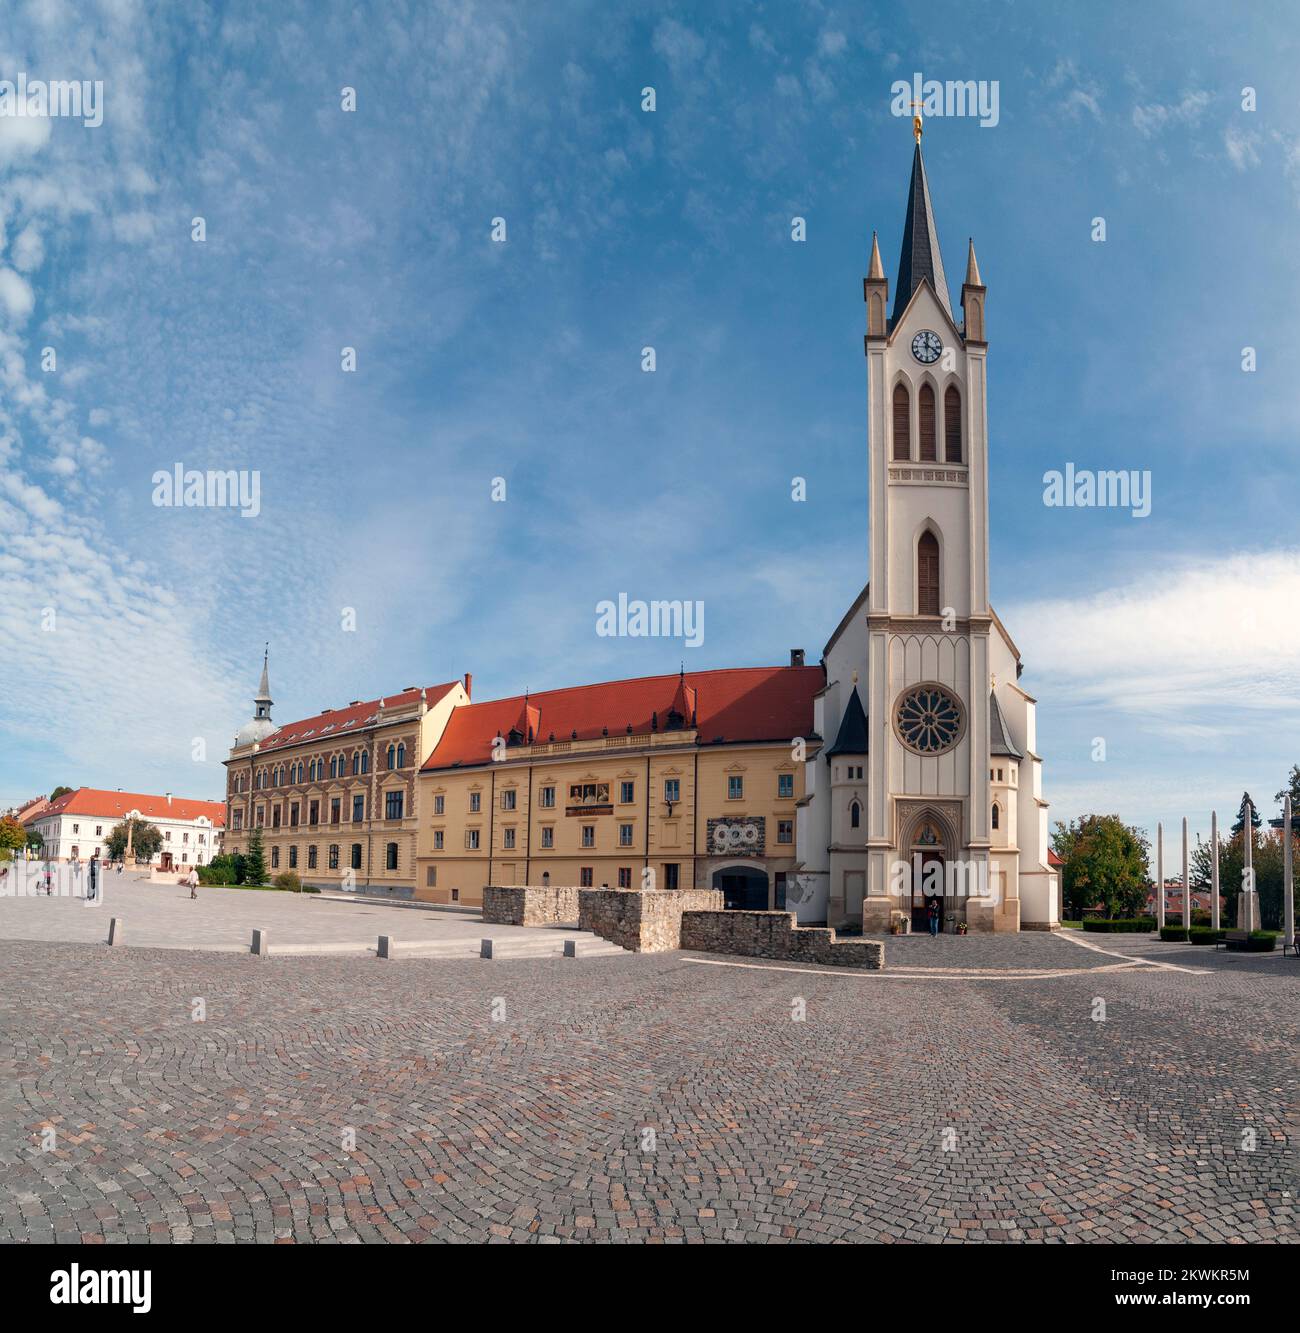 Iglesia de Nuestra Señora de Hungría en la plaza principal en el centro de Keszthely, Hungría. Keszthely es una ciudad húngara de 20.895 habitantes situada en el Foto de stock